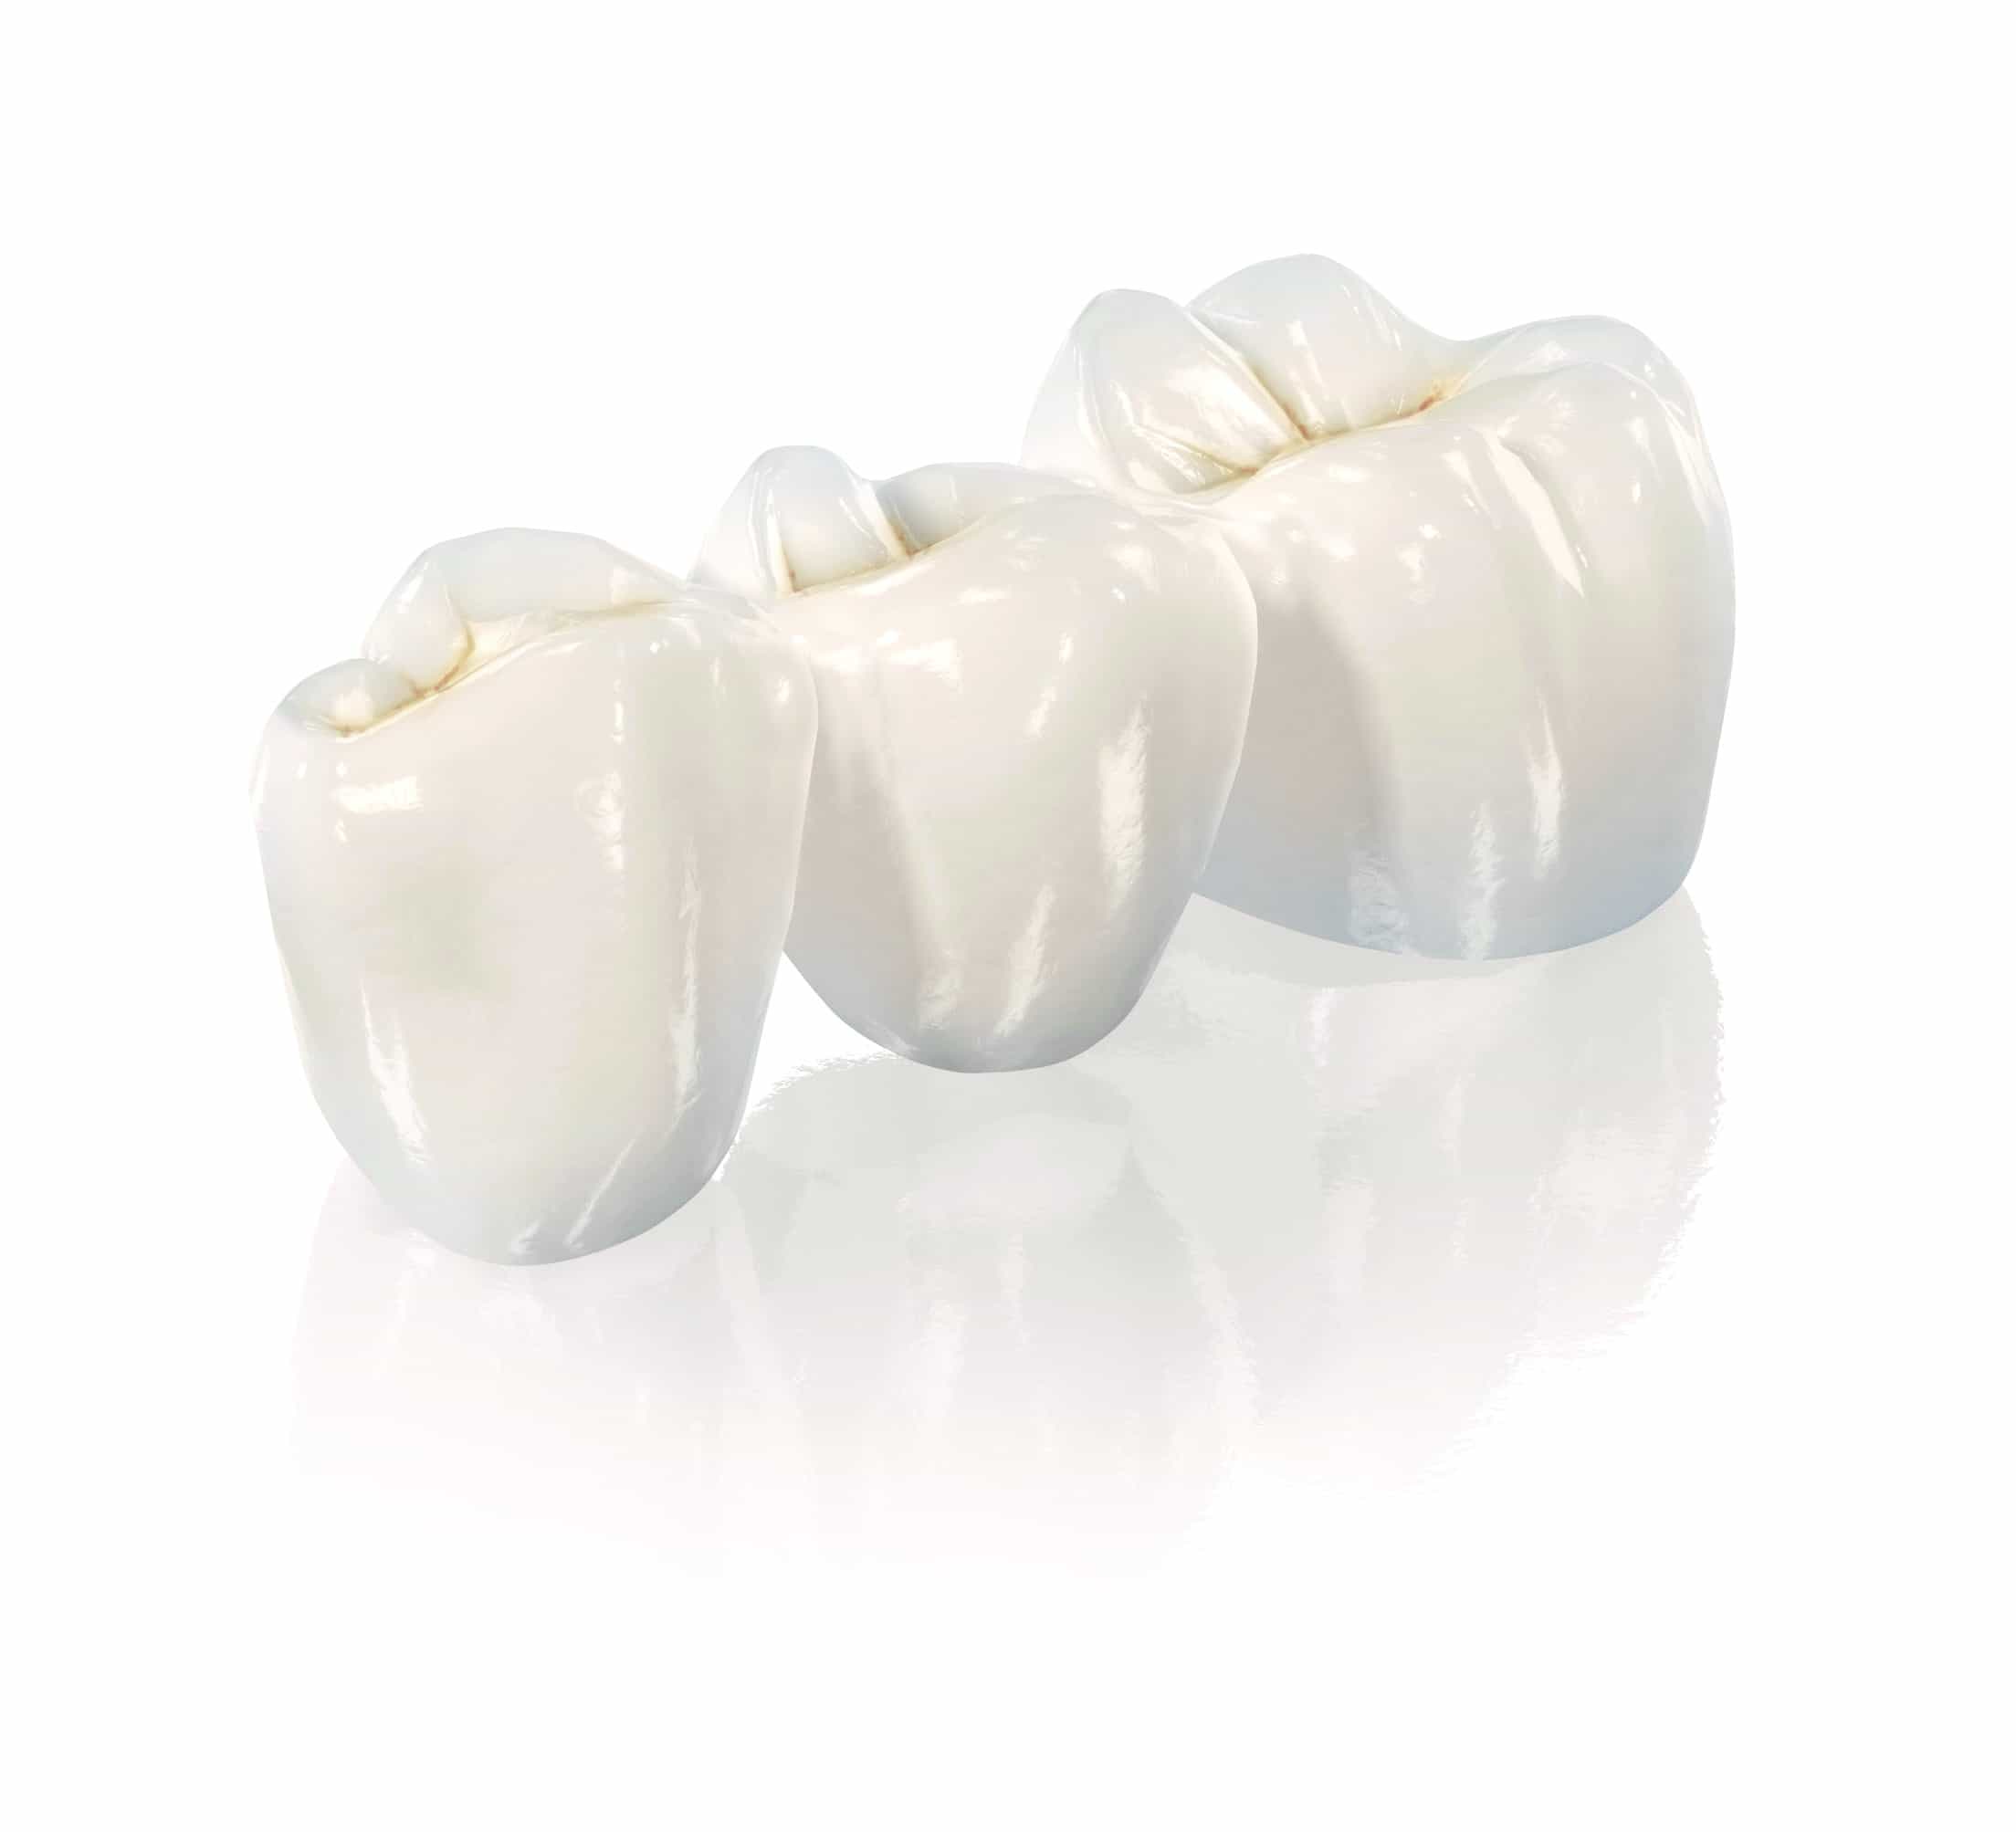 Porcelain bridge on the patient's own teeth